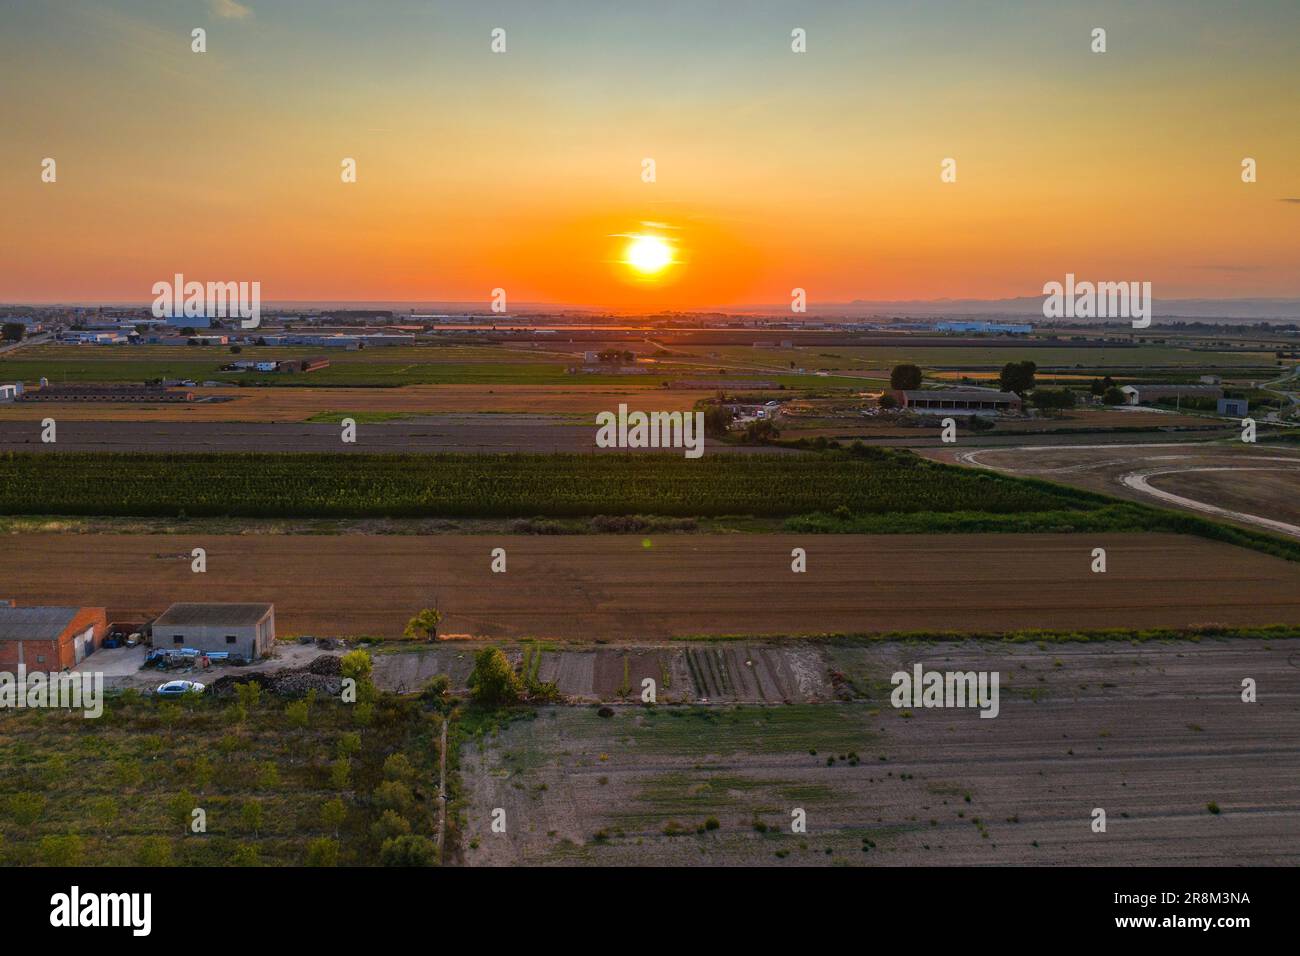 Aerial view of the village of Golmés at sunset (Pla d'Urgell, Lleida, Catalonia, Spain) ESP: Vista aérea del pueblo de Golmés al atardecer (Lérida) Stock Photo